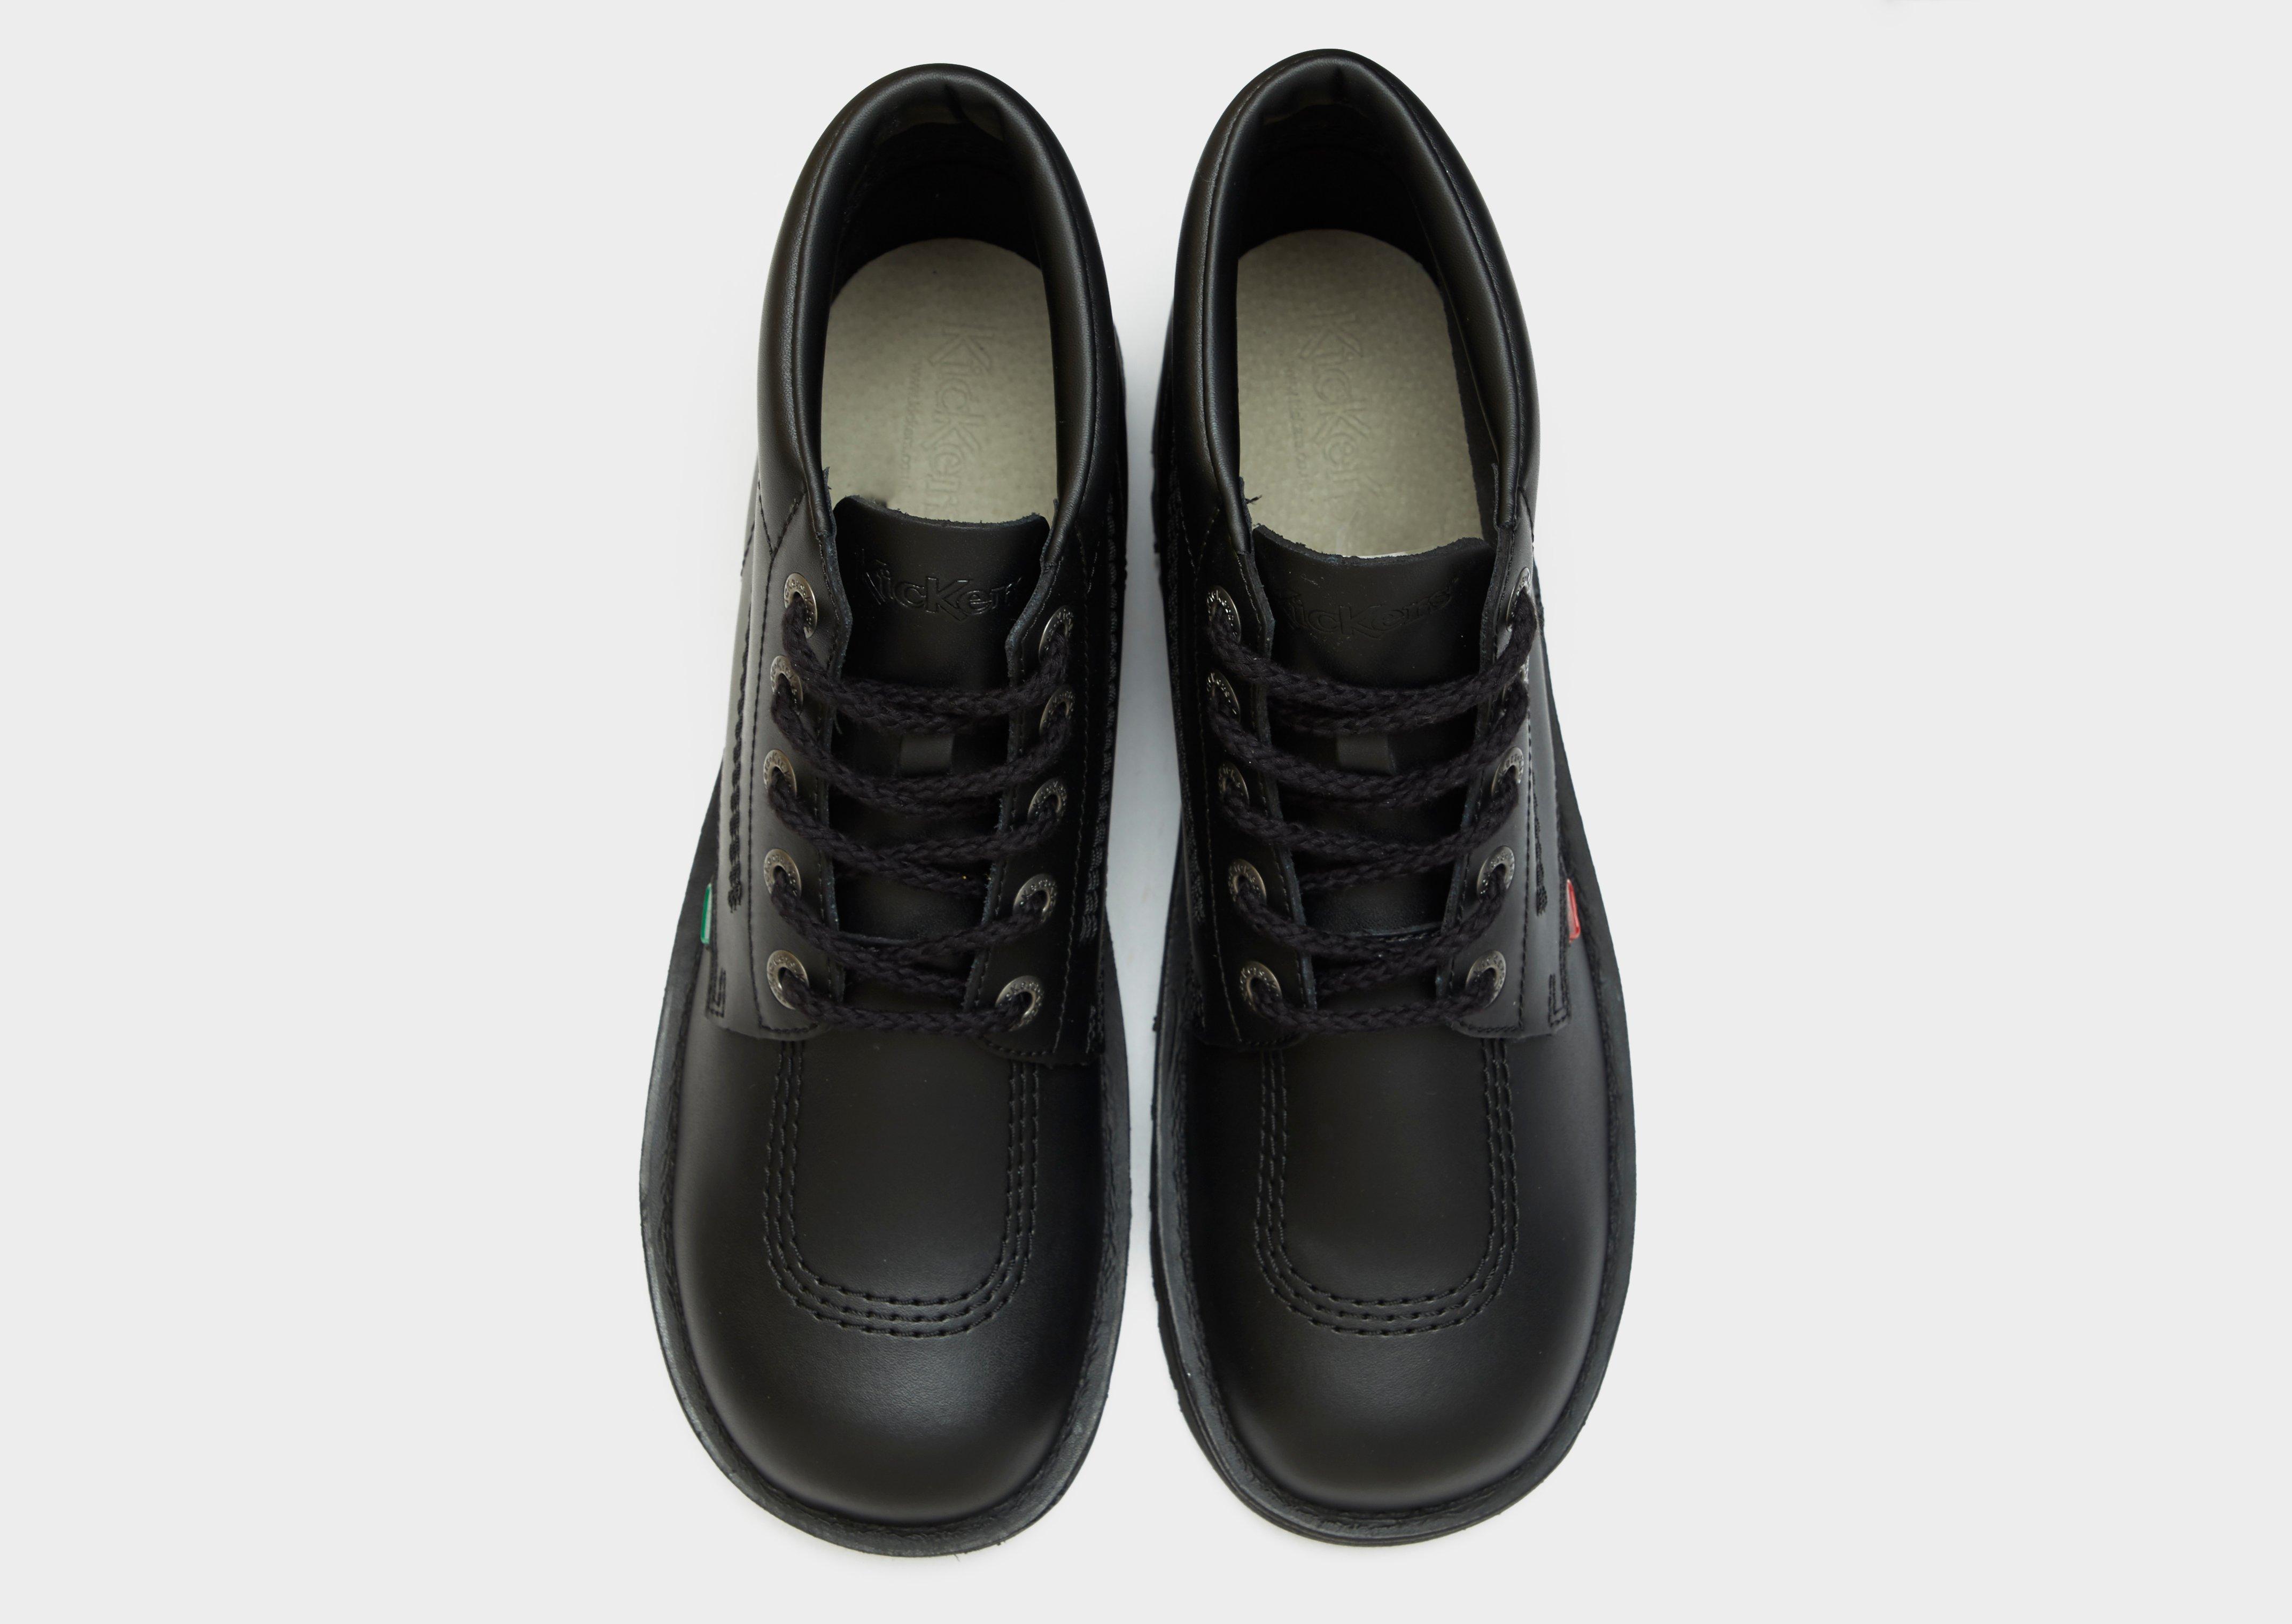 Kicker Sneaker Black Knit - Jildor Shoes